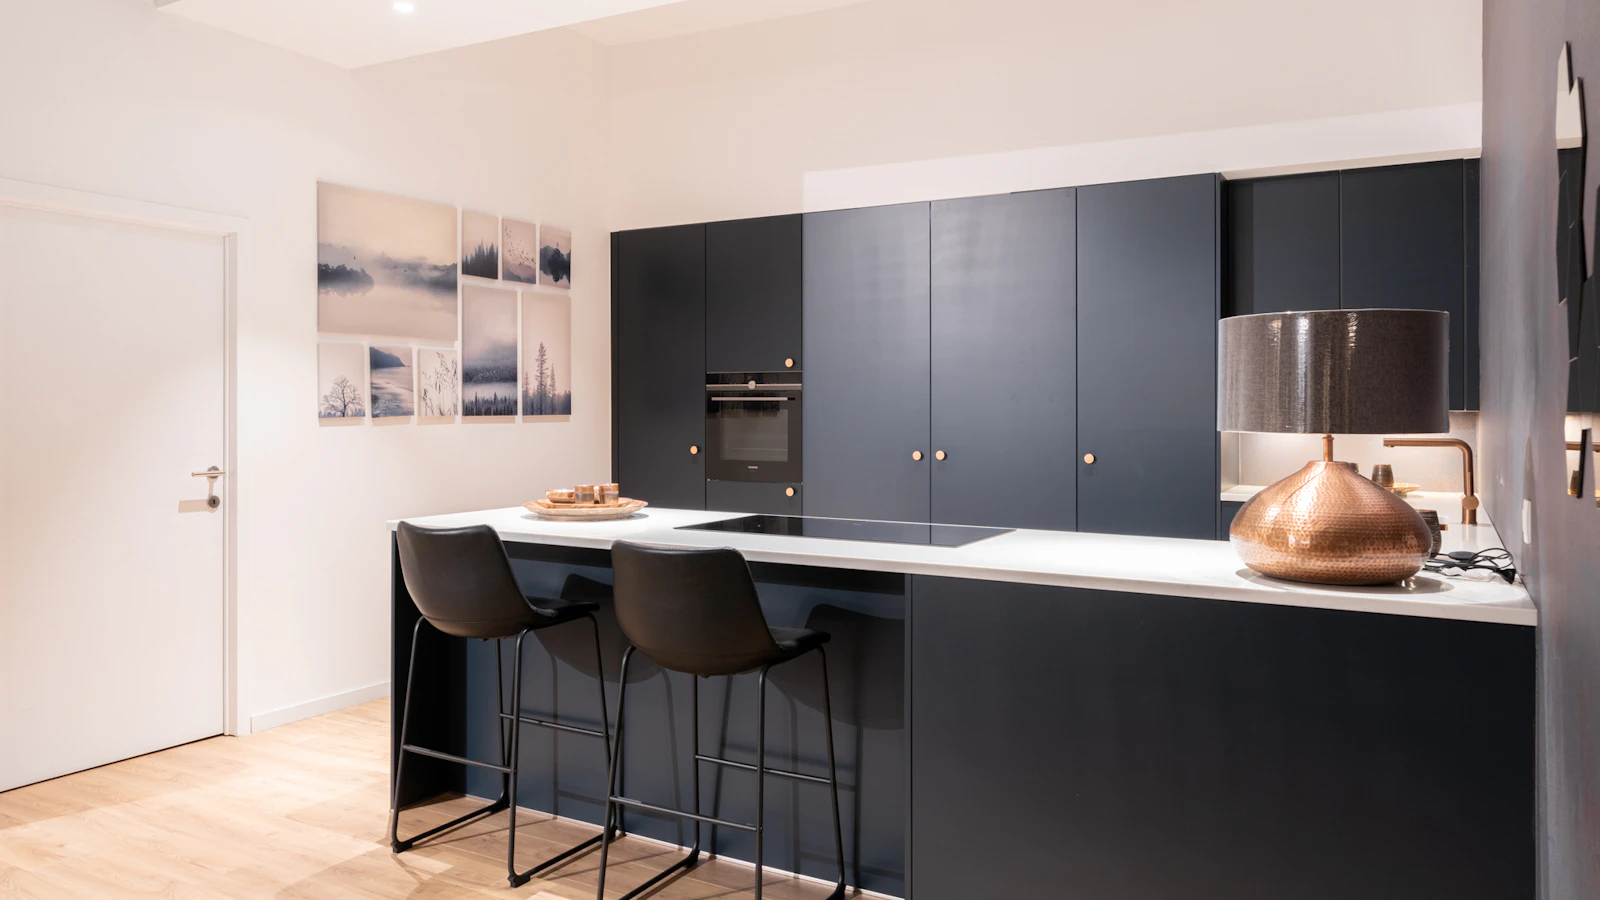 Blauwe moderne keuken met koper accenten